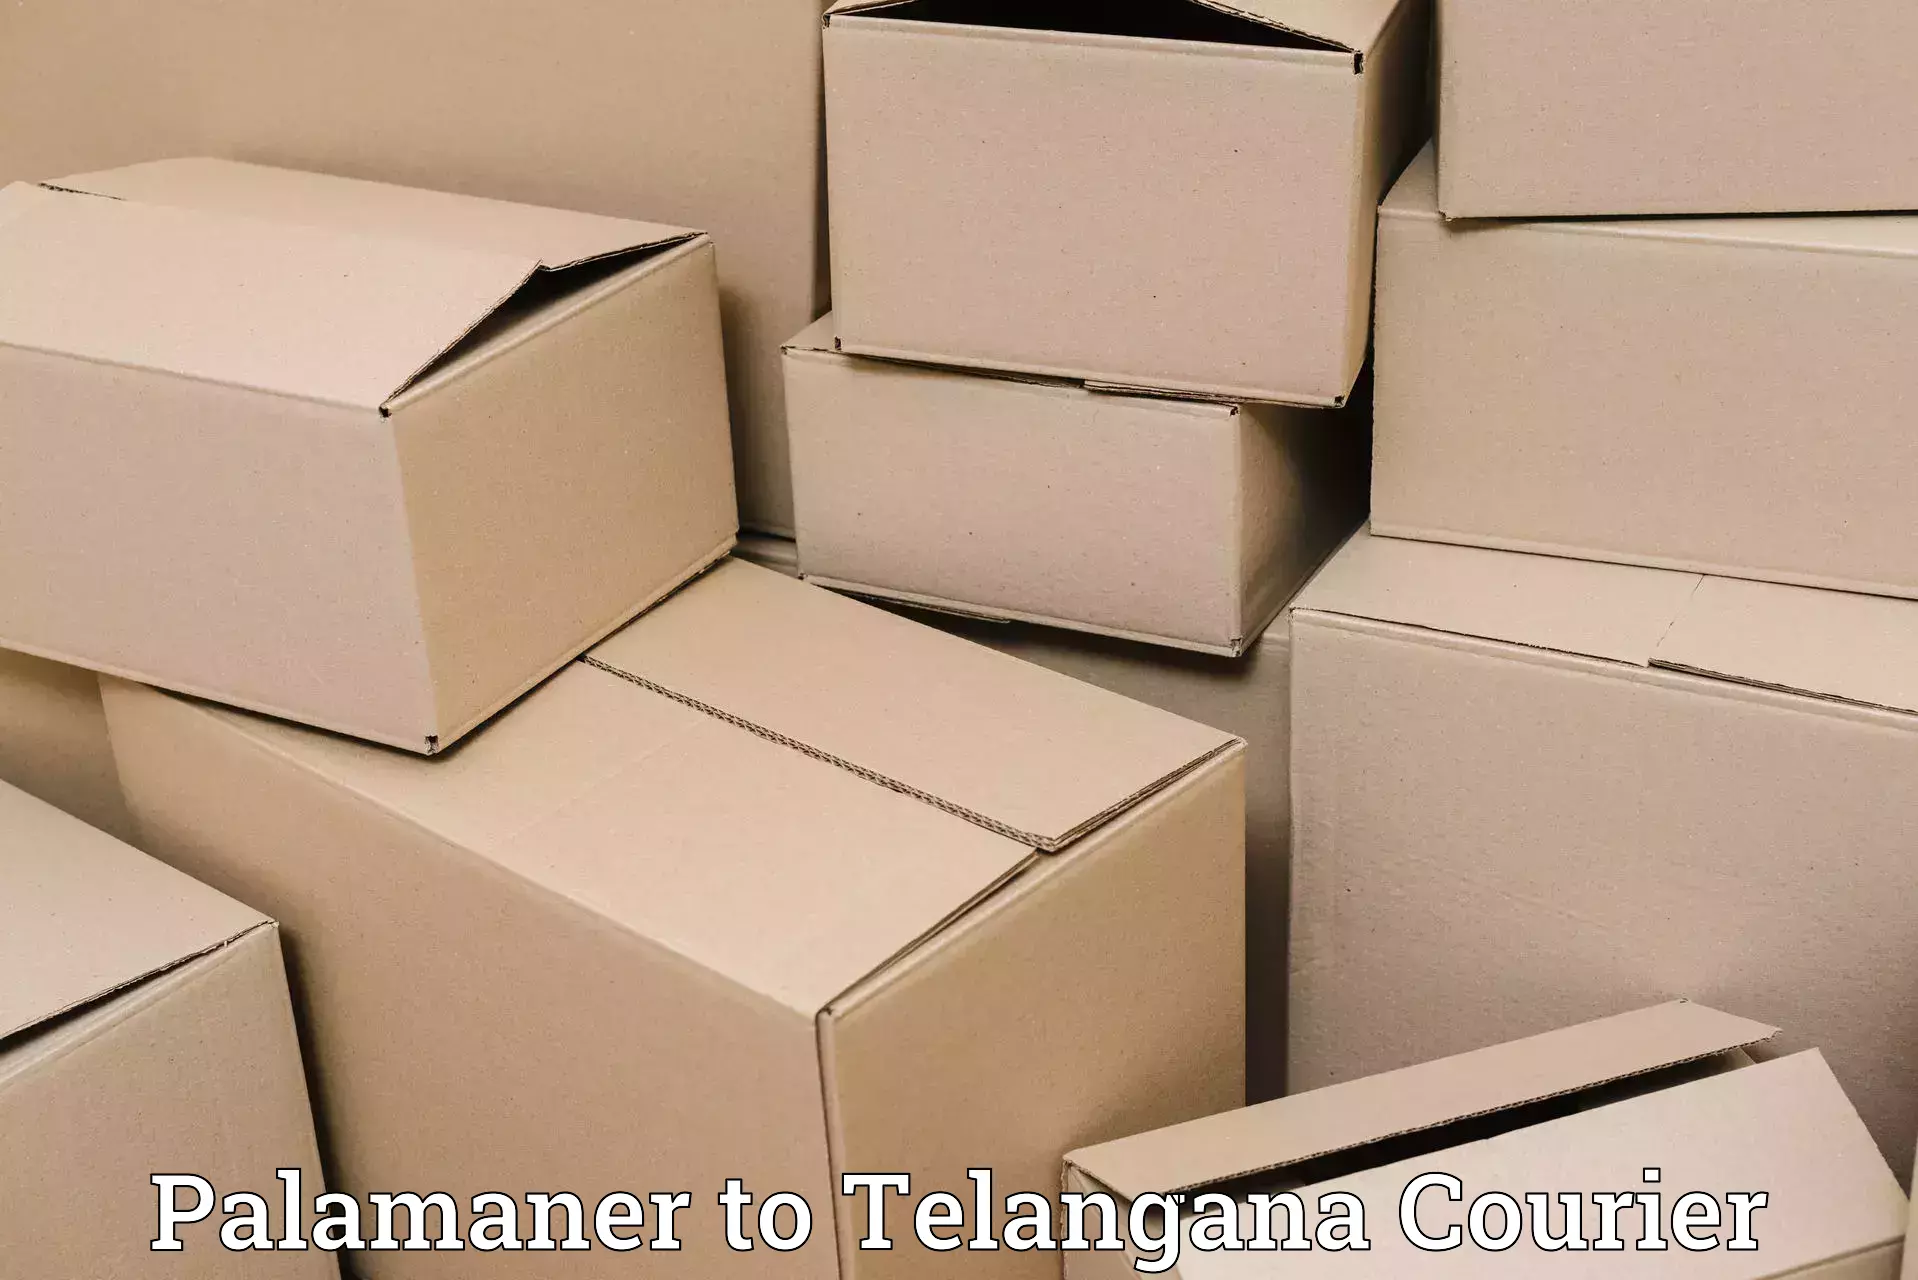 Efficient parcel tracking Palamaner to Kothur